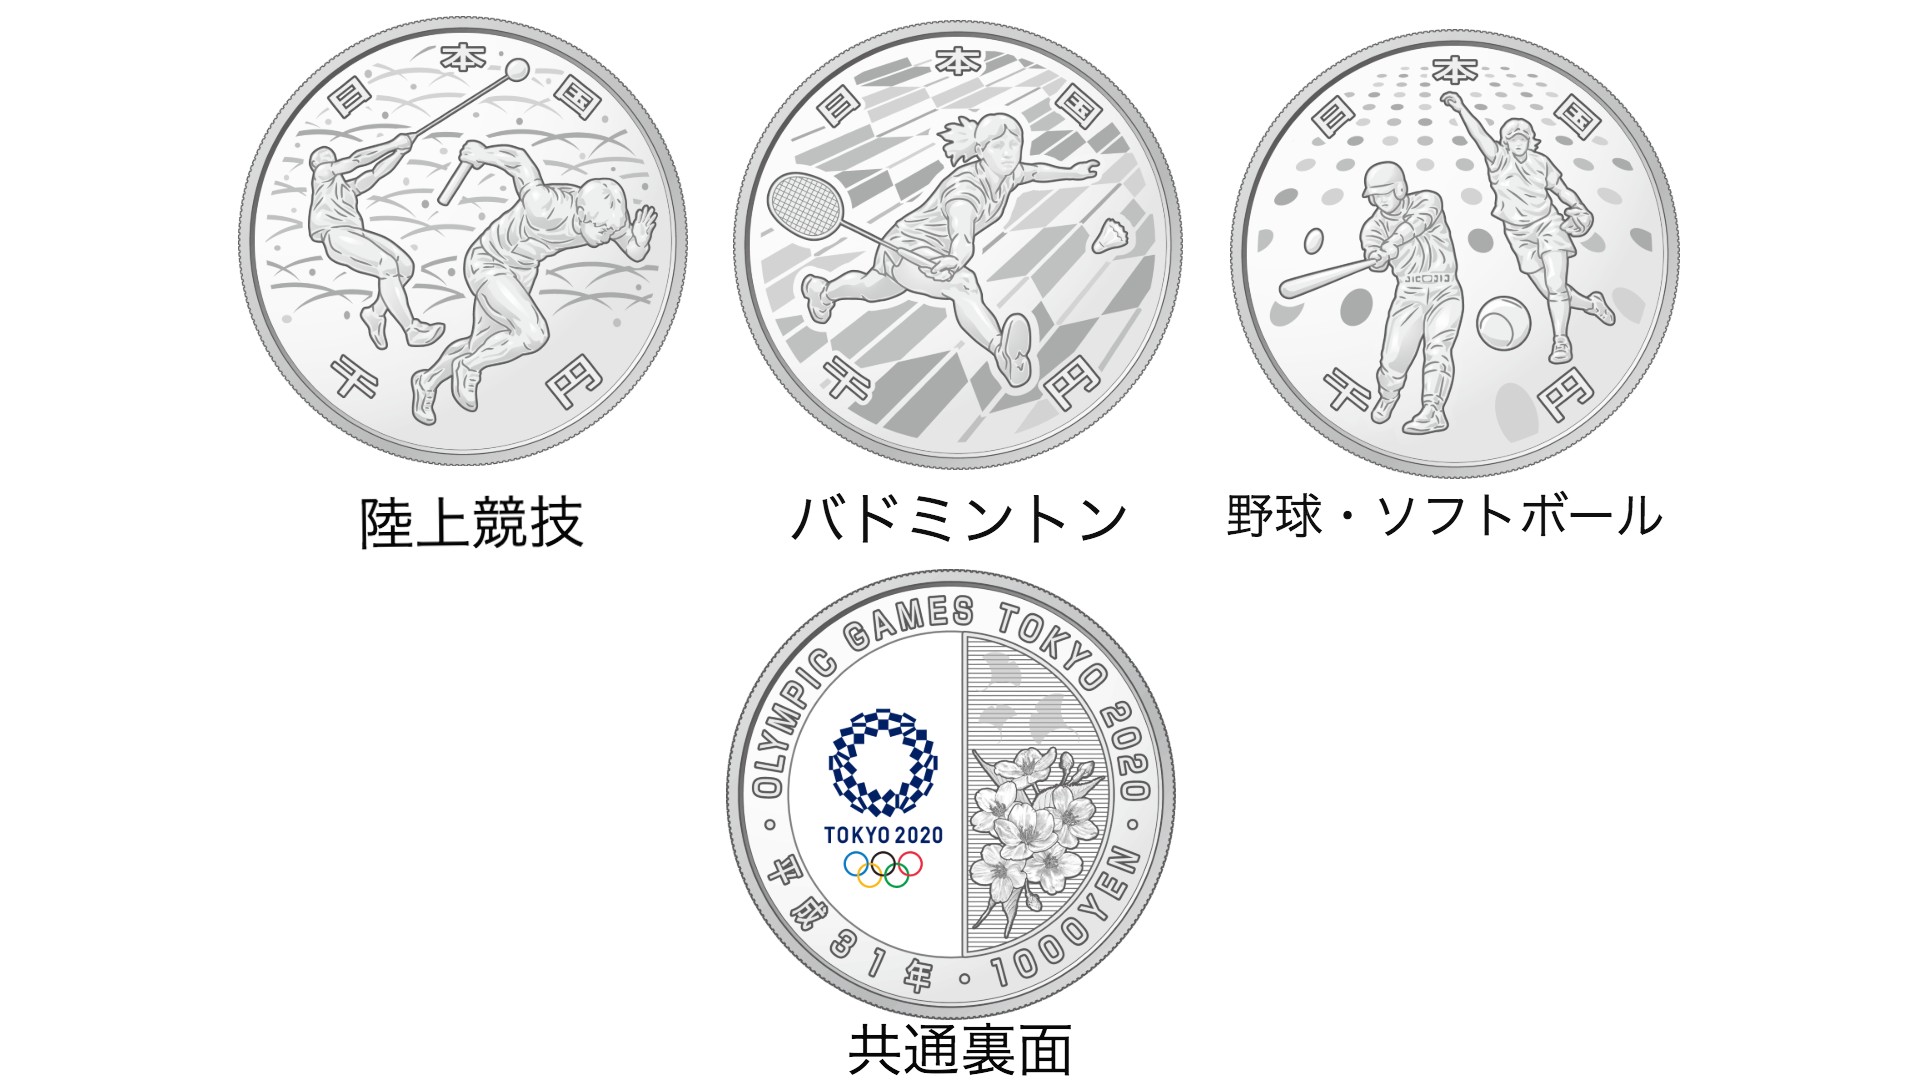 東京オリンピックとパラリンピックの記念貨幣が登場するよ 競技種目がデザインされています Pouch ポーチ